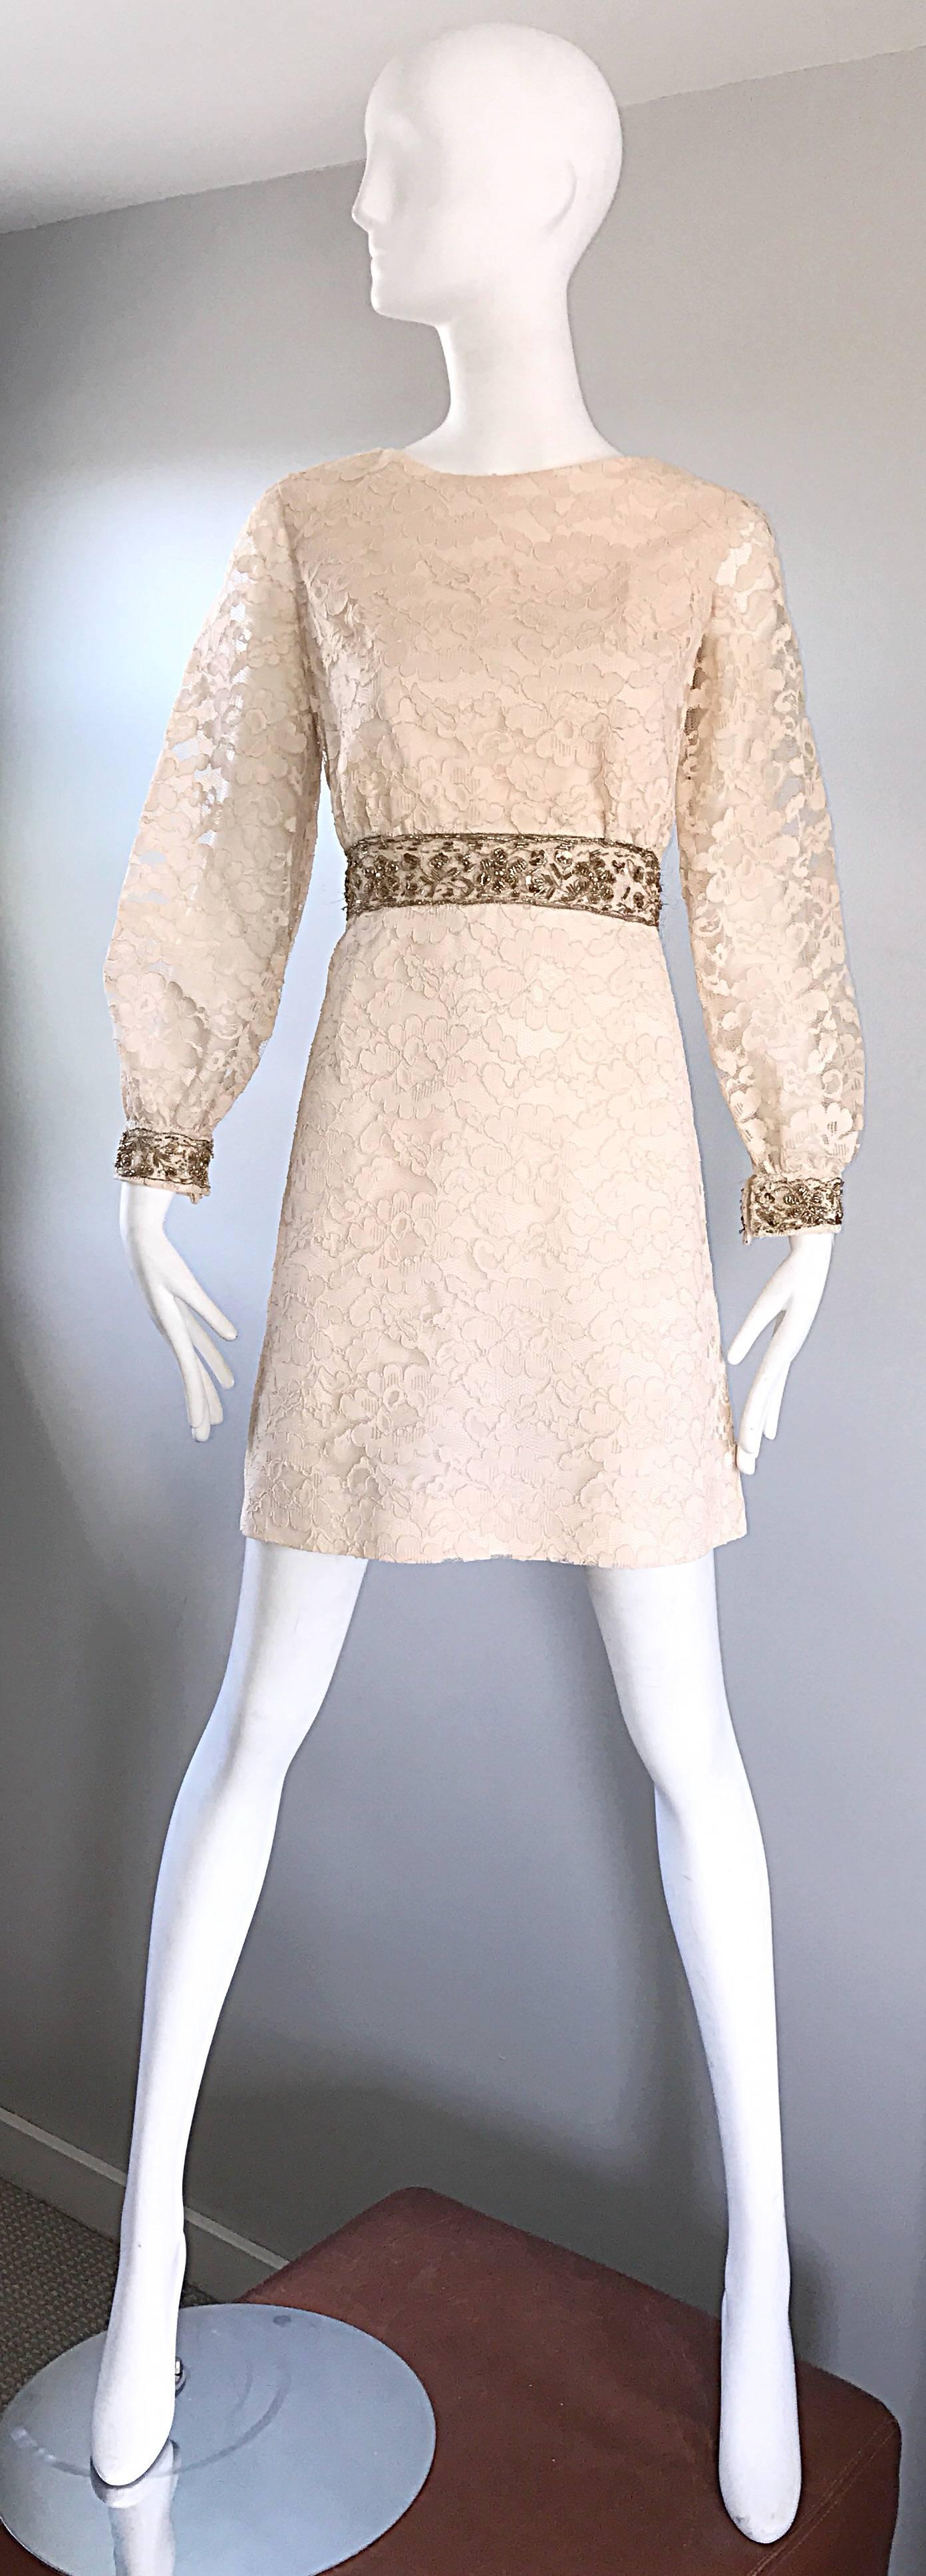 Chic robe A-line en dentelle ivoire et or des années 1960 ! Le corsage est ajusté et la jupe est évasée et flatteuse. La ceinture et les poignets des manches sont brodés d'or et ornés de paillettes, de perles et de perles dorées. Jolies manches